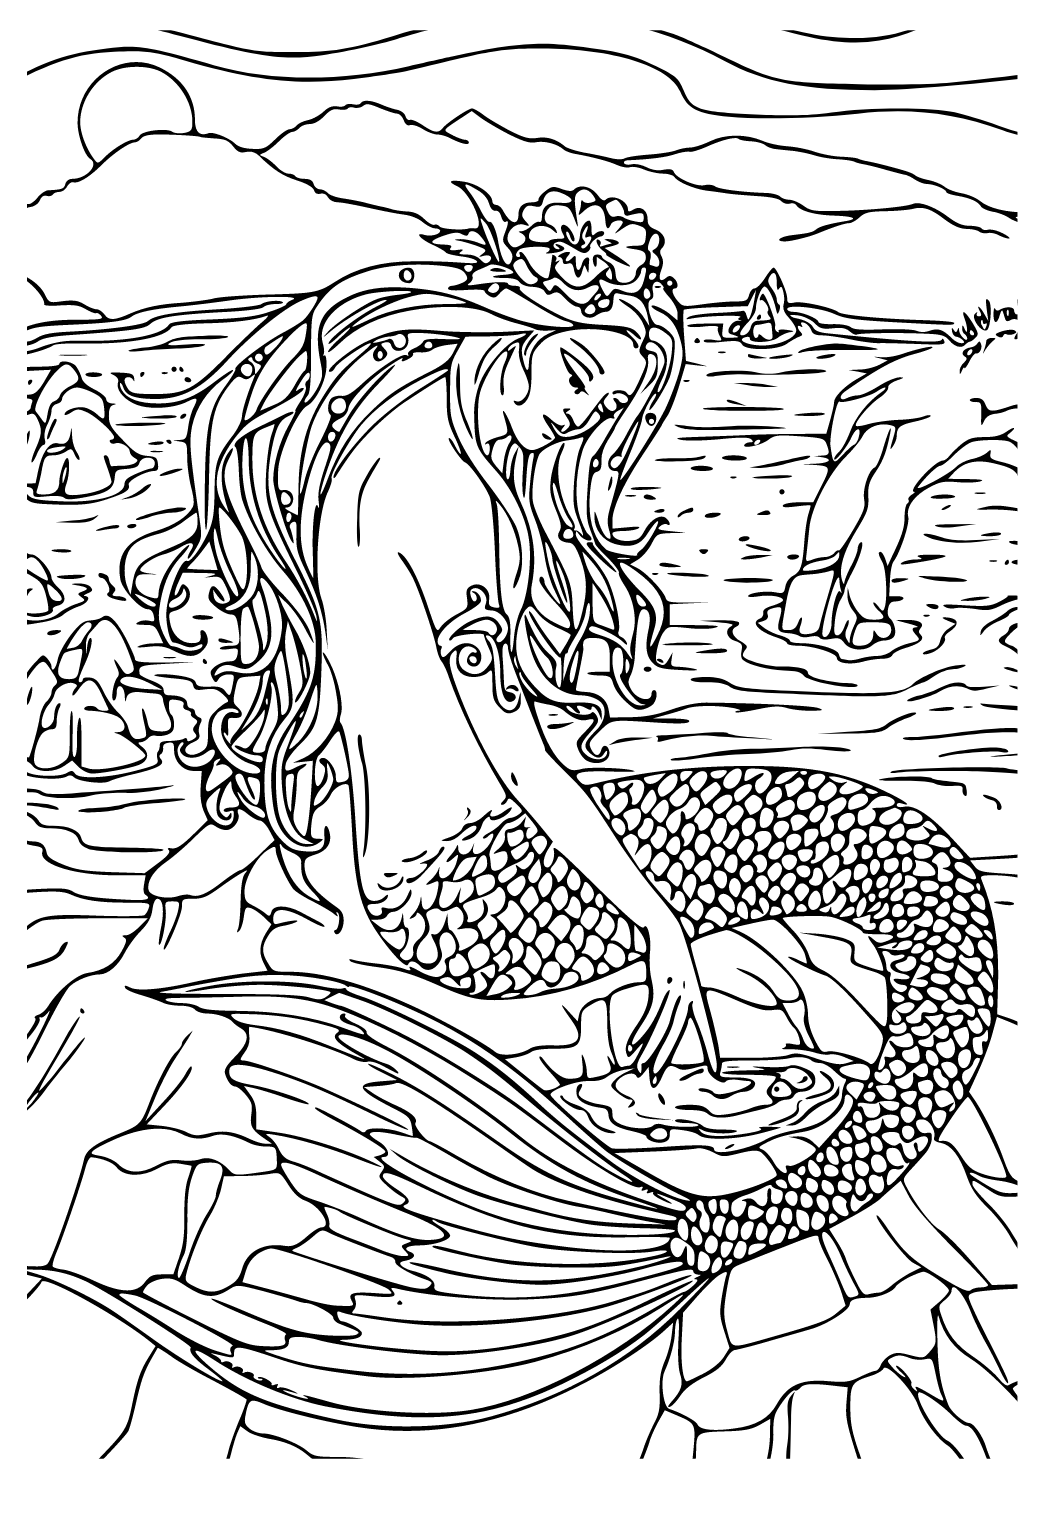 Meerjungfrau